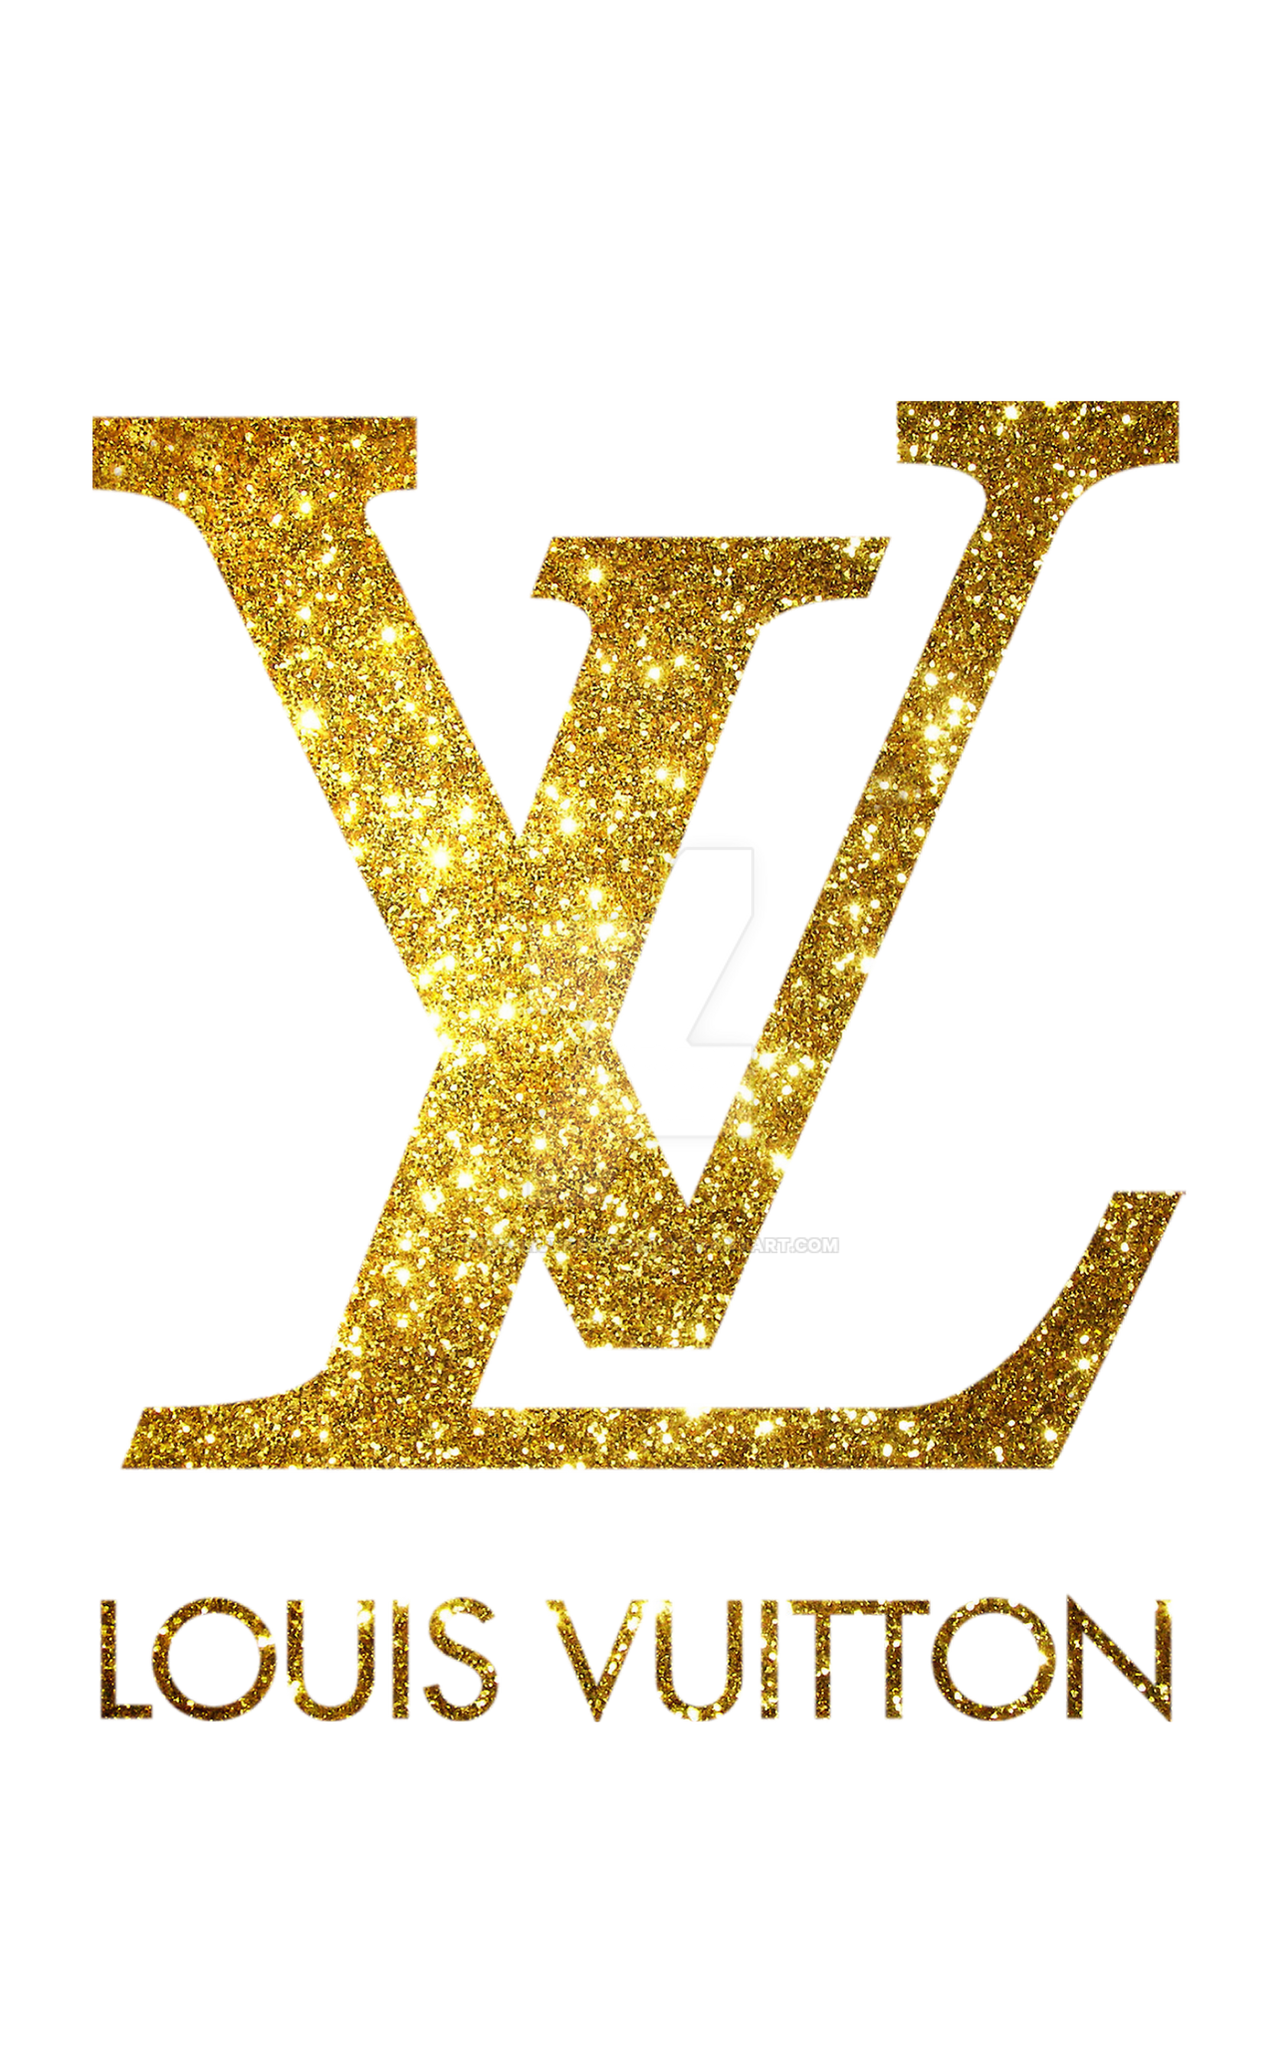 L V logo